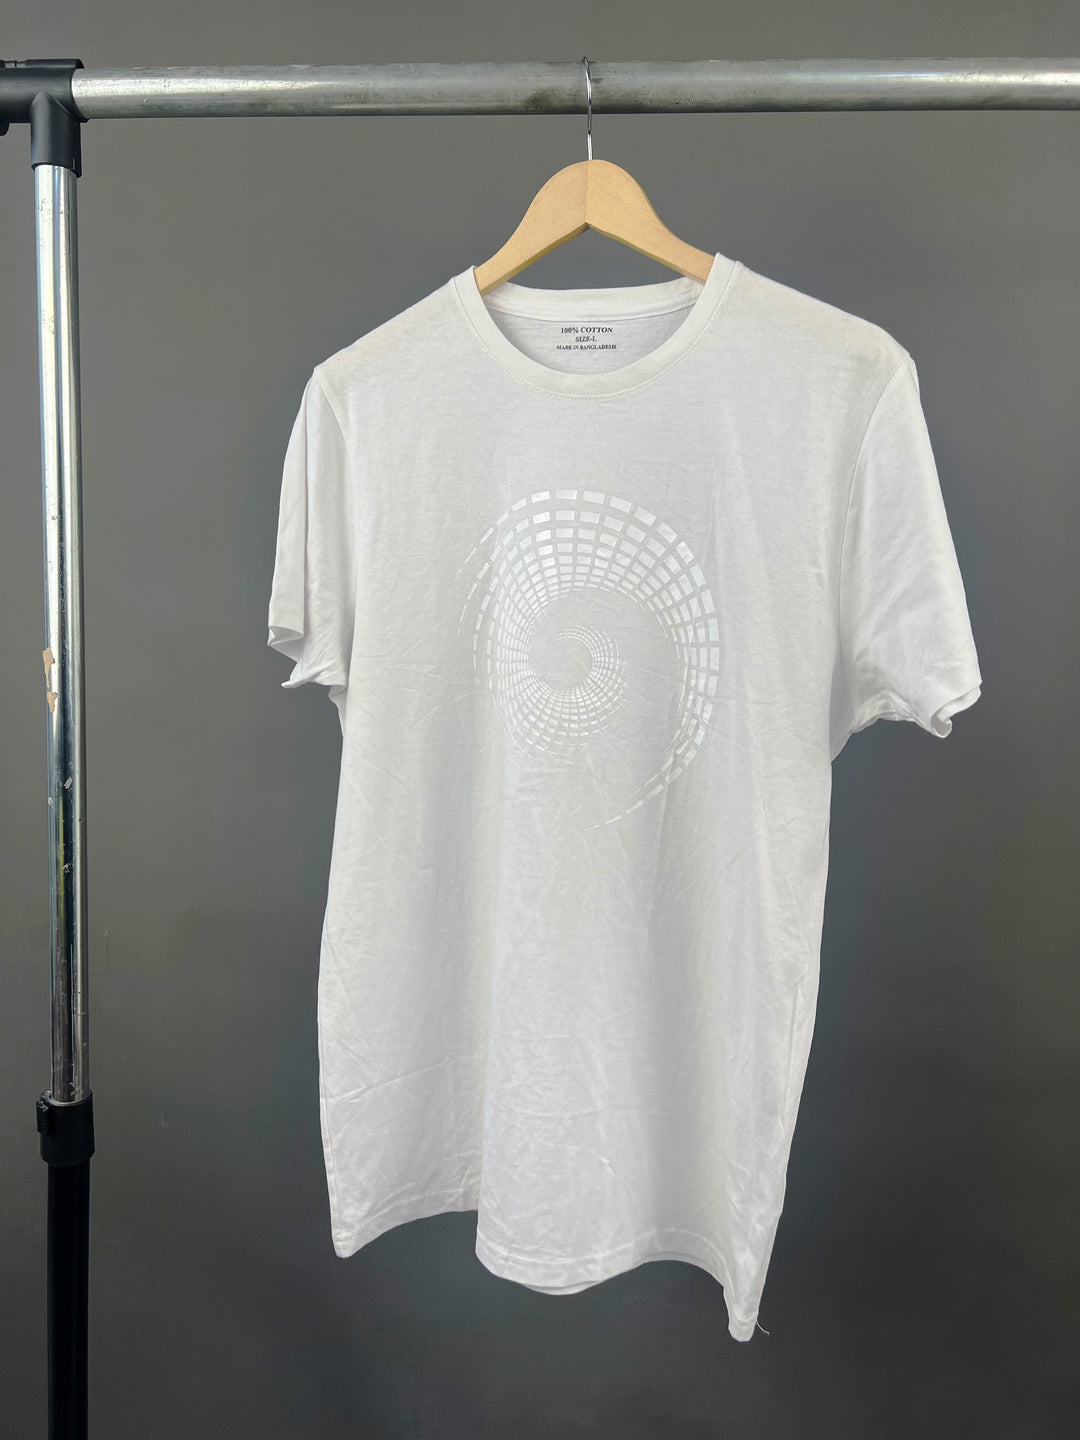 Spiral print t-shirt